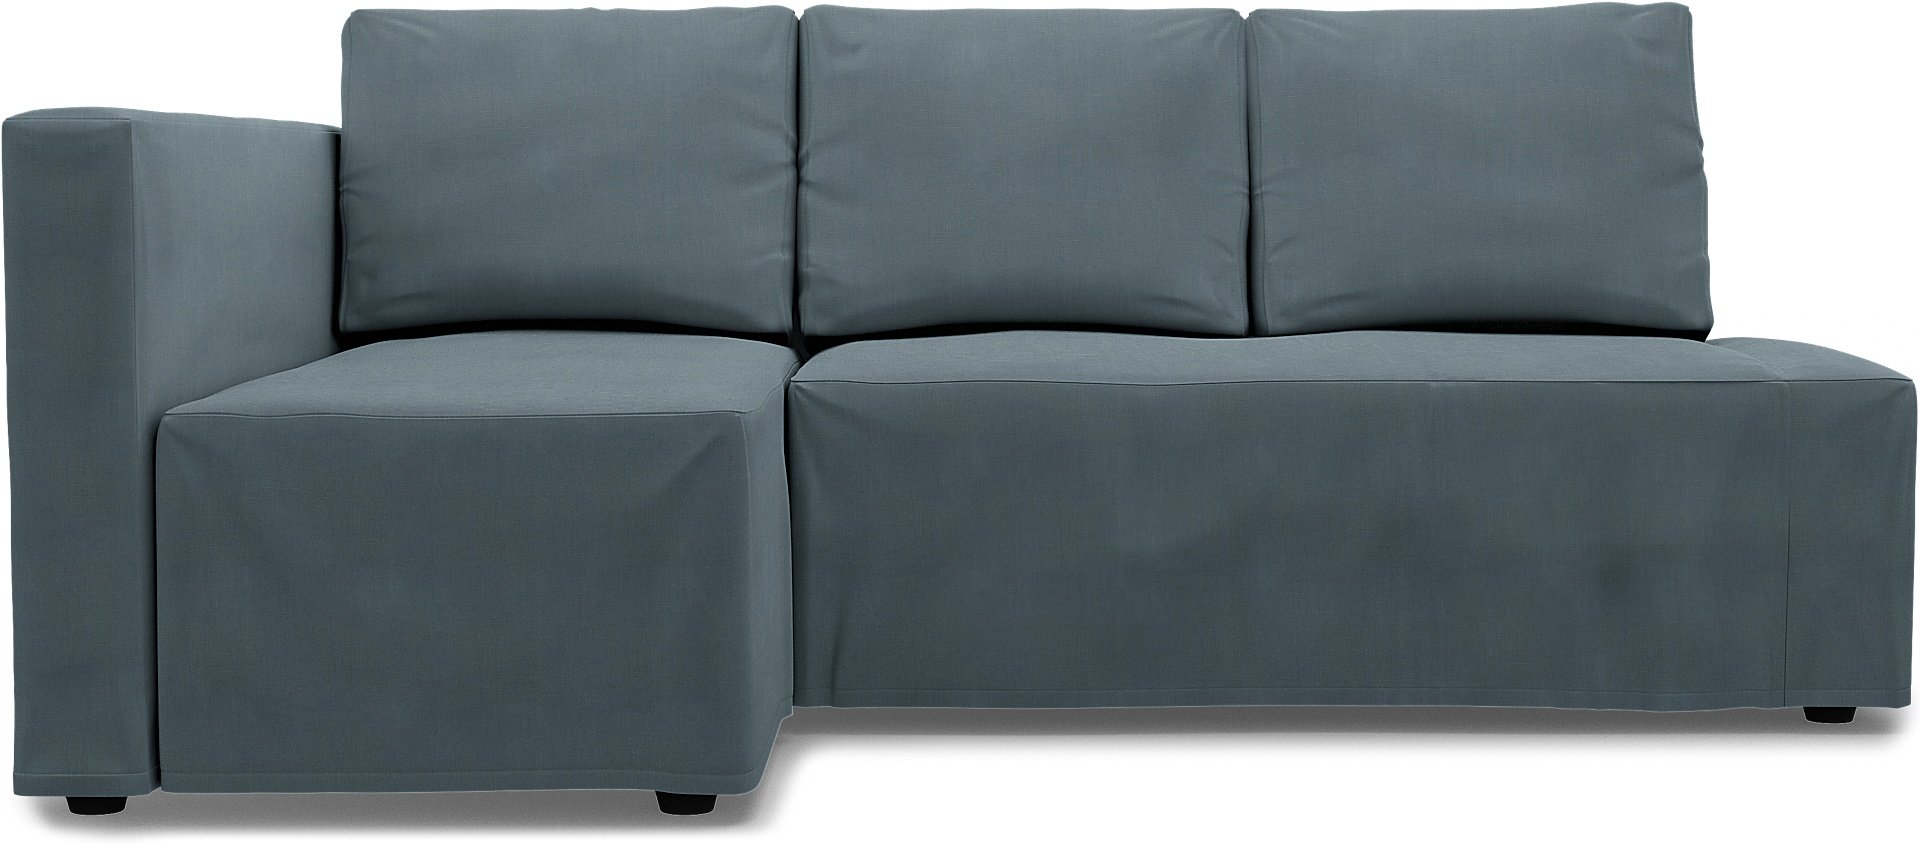 IKEA - Friheten Sofa Bed with Left Chaise Cover, Dusk, Linen - Bemz